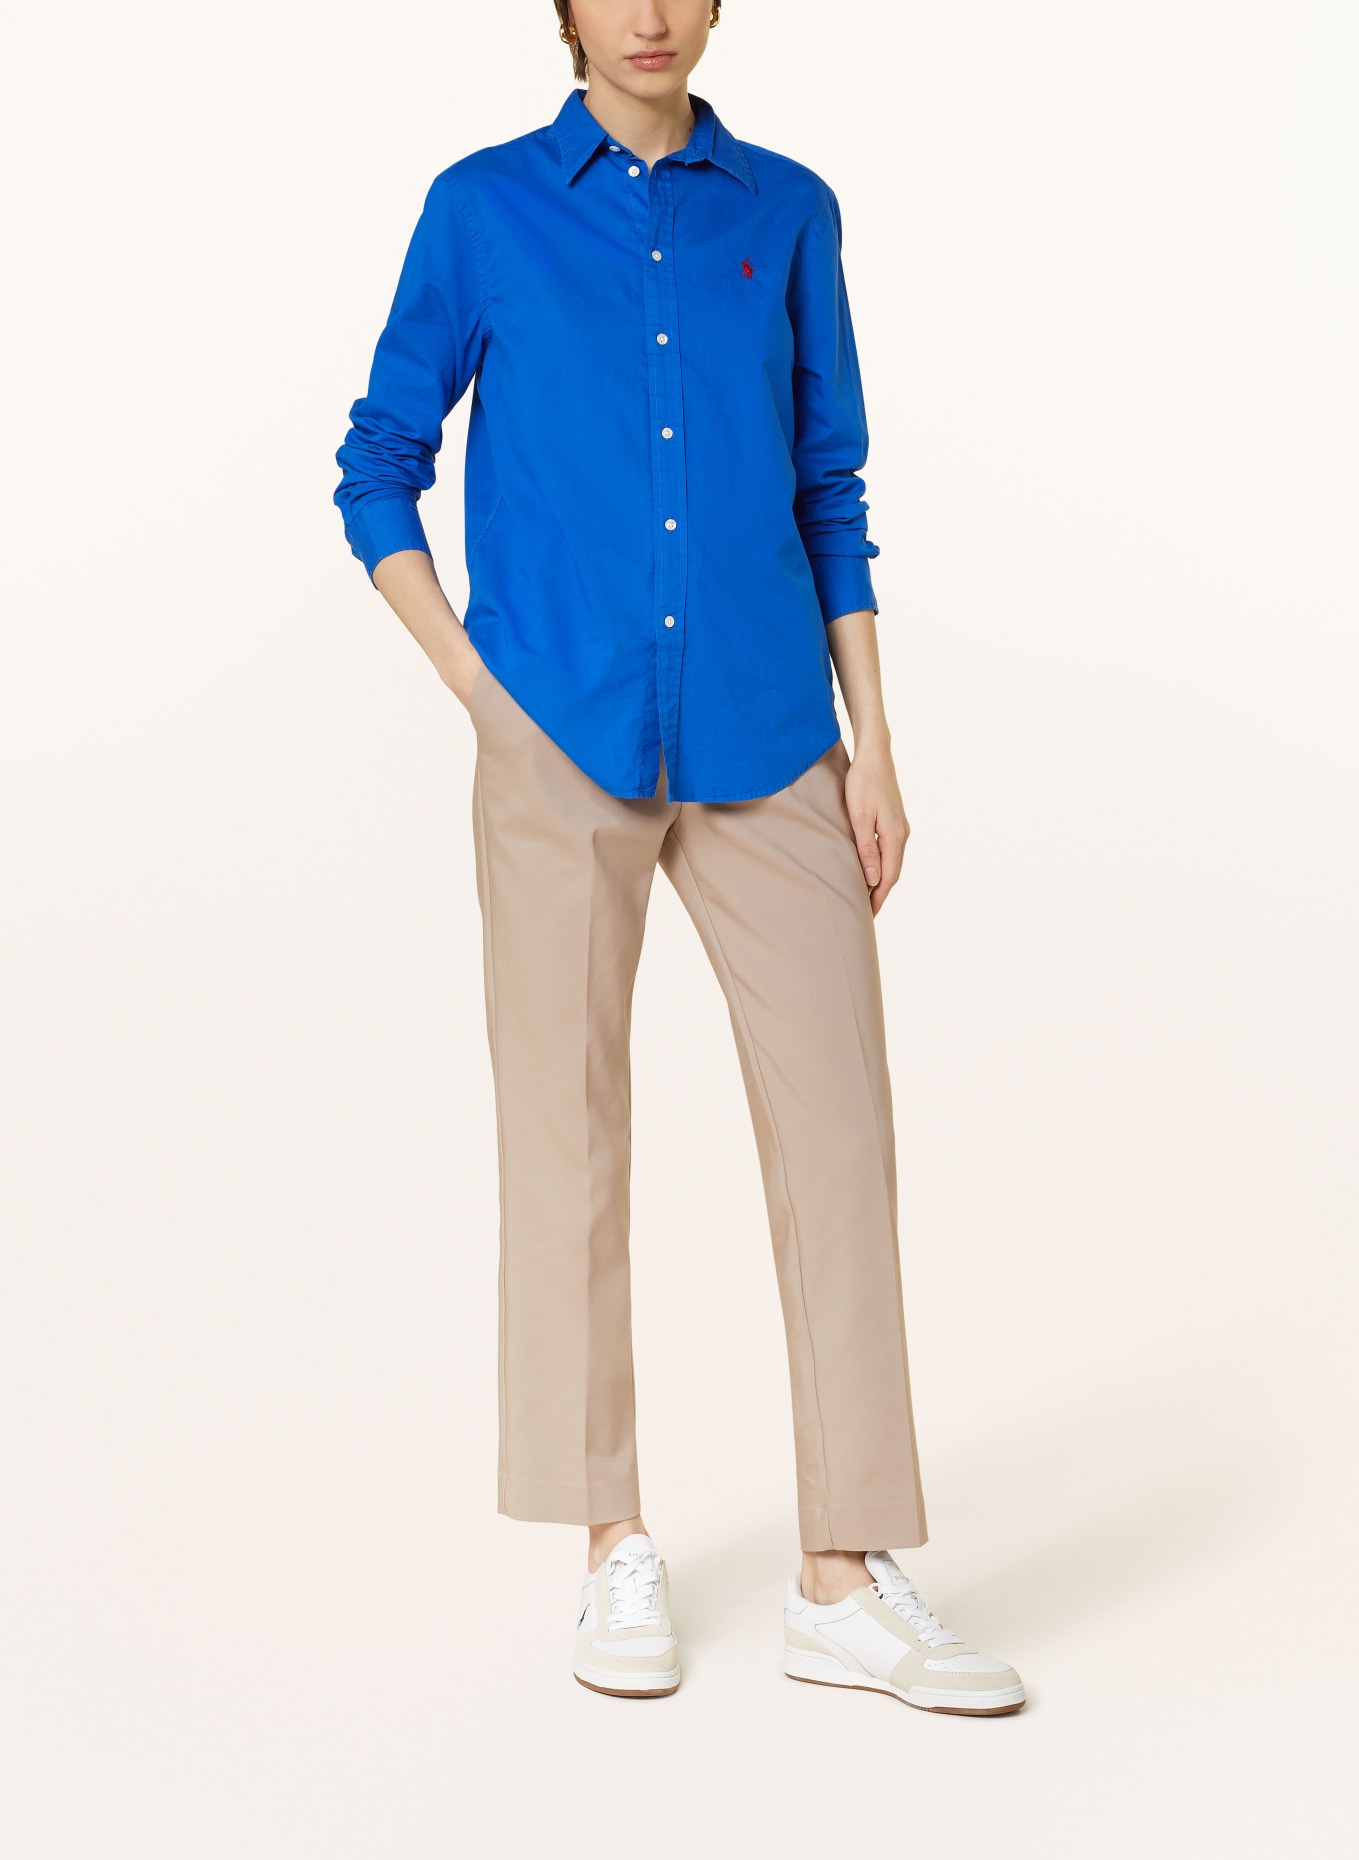 POLO RALPH LAUREN Shirt blouse, Color: BLUE (Image 2)